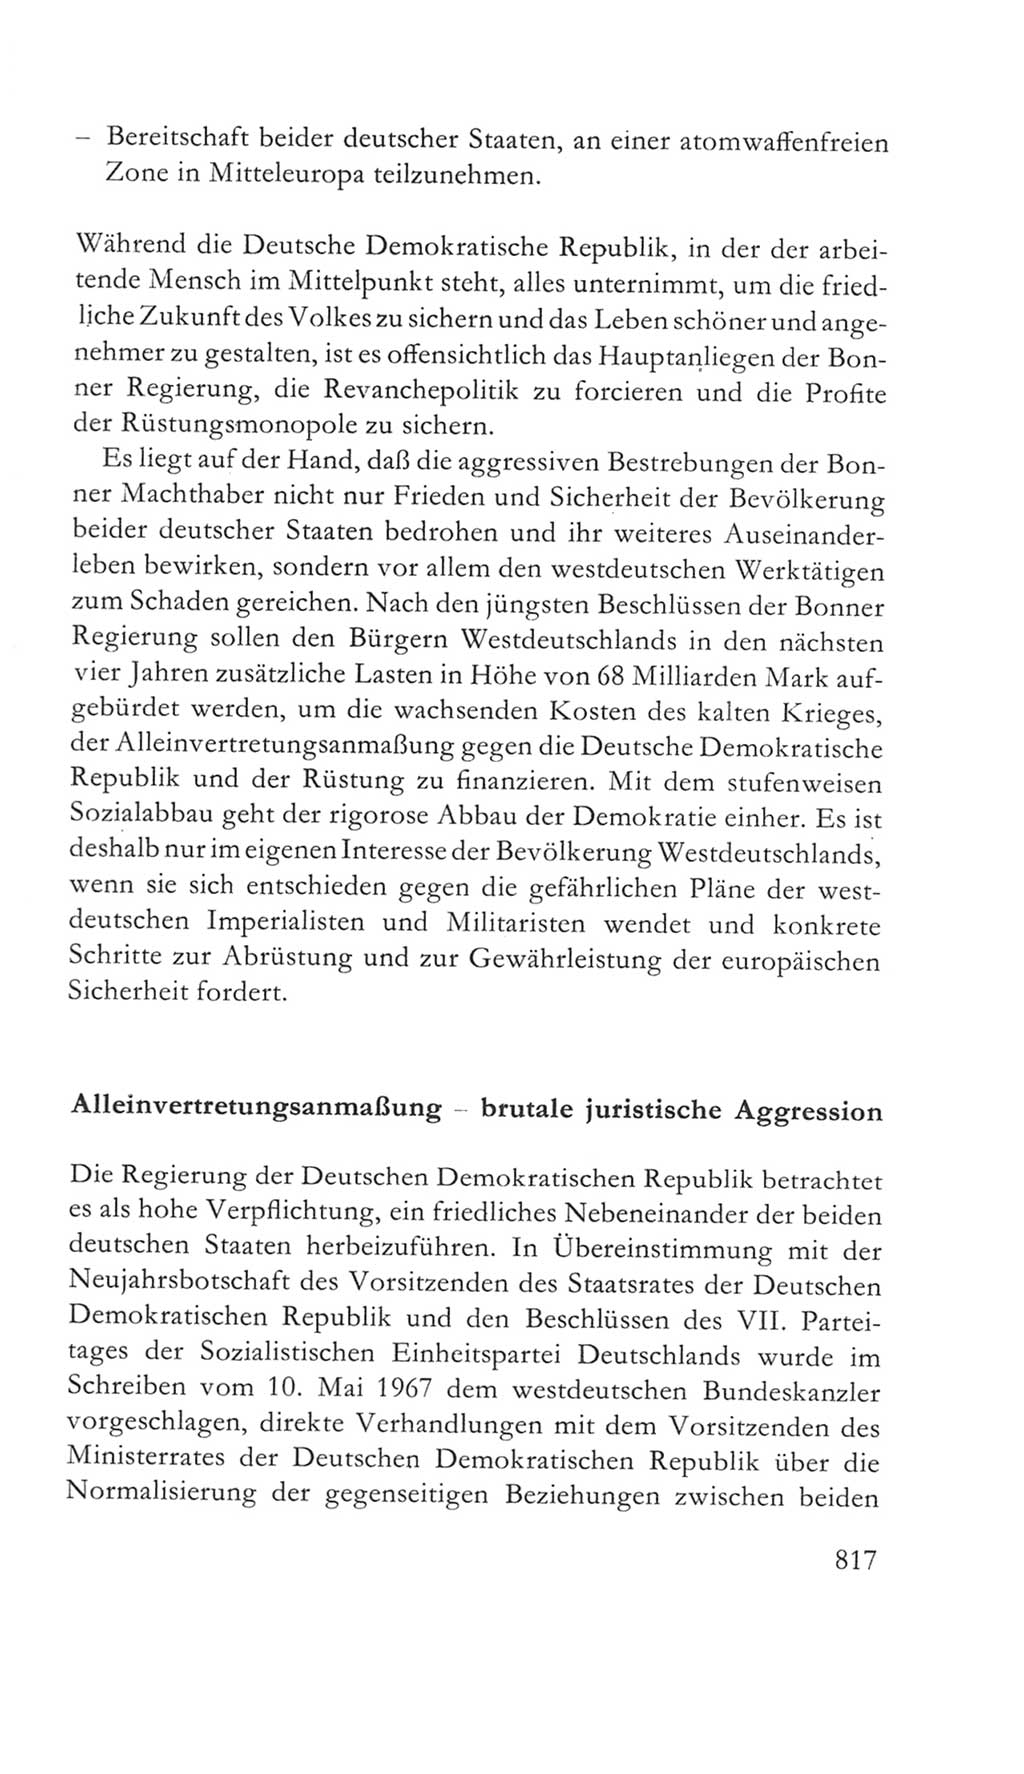 Volkskammer (VK) der Deutschen Demokratischen Republik (DDR) 5. Wahlperiode 1967-1971, Seite 817 (VK. DDR 5. WP. 1967-1971, S. 817)